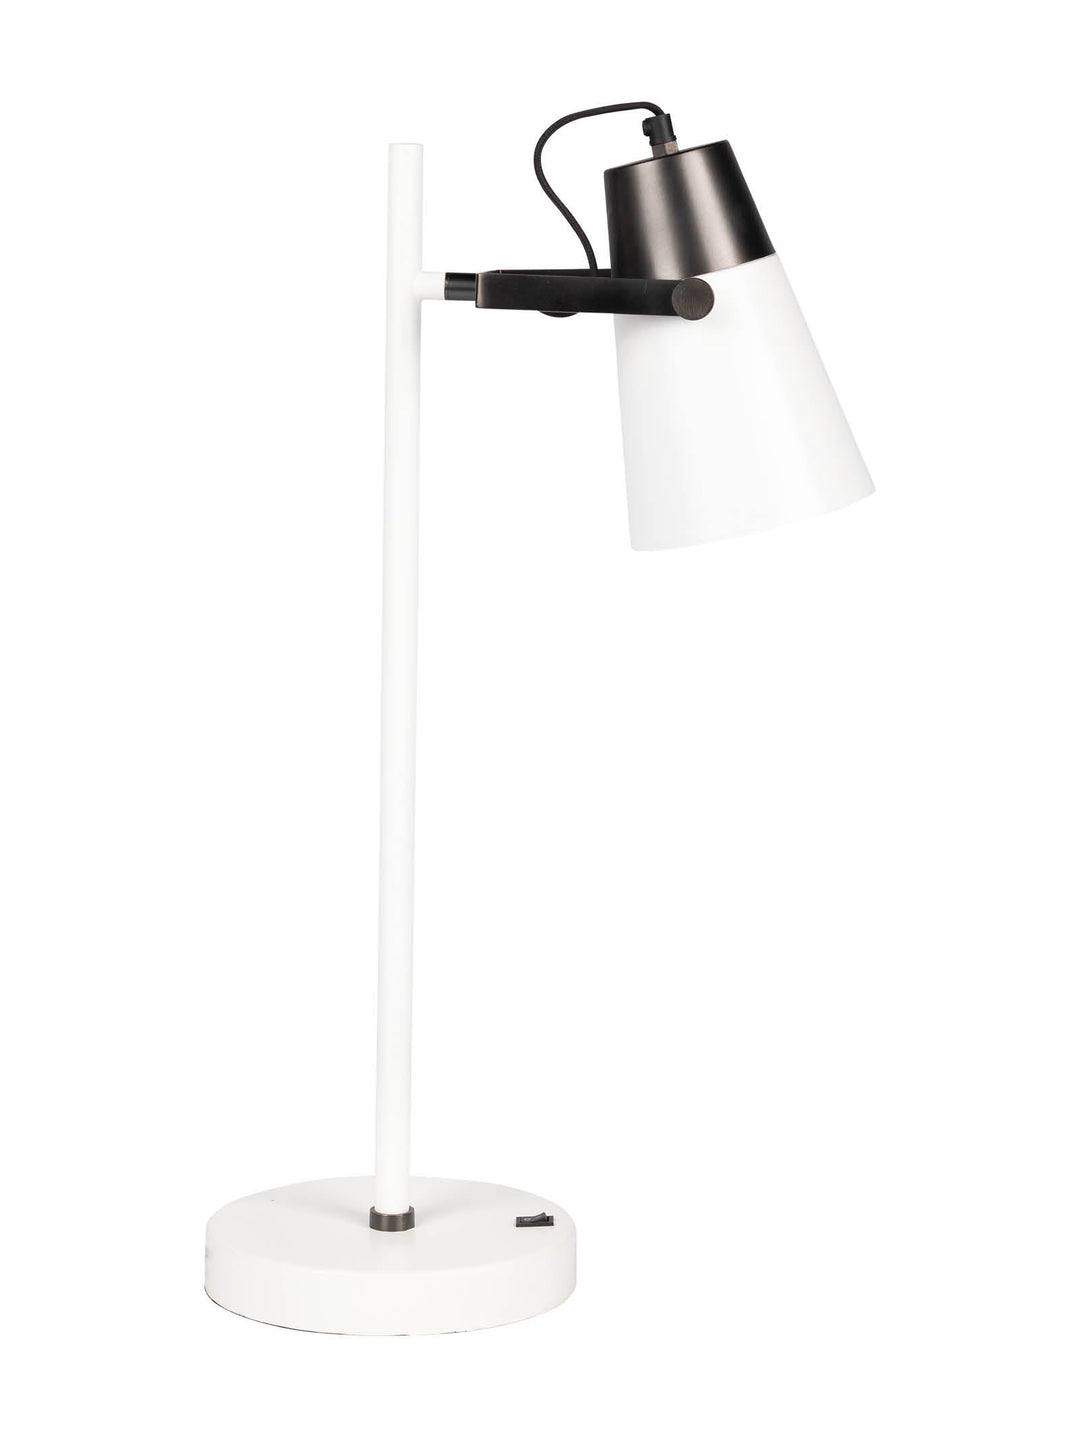 Mystique Desk Lamp in Starlight - lamp- Hertex Haus Online - Homeware